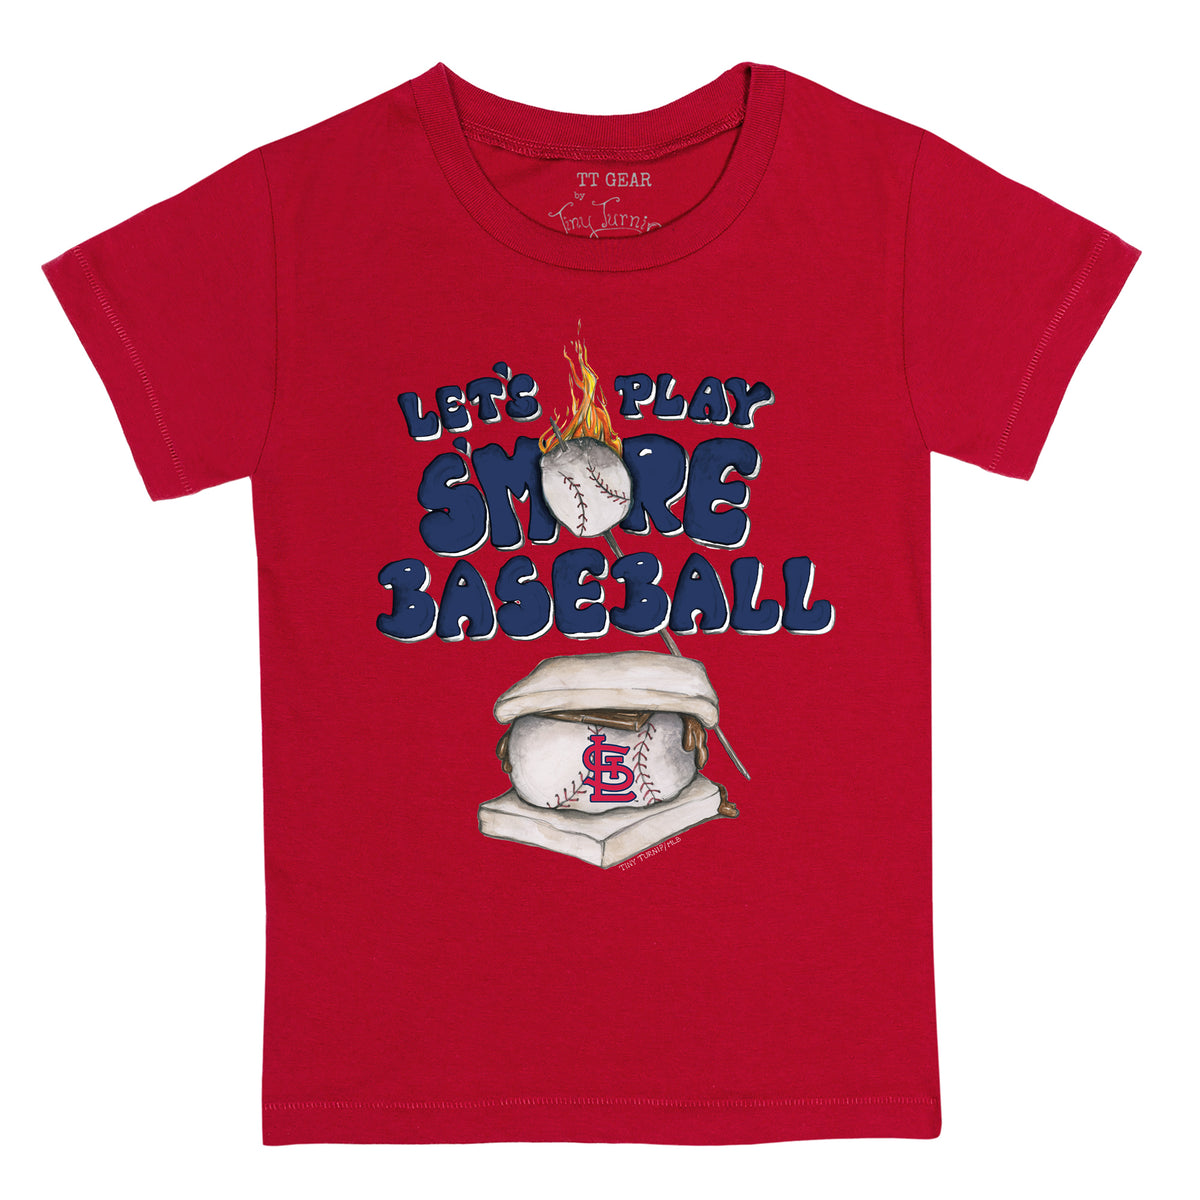 Lids St. Louis Cardinals Tiny Turnip Girls Toddler Blooming Baseballs  Fringe T-Shirt - White